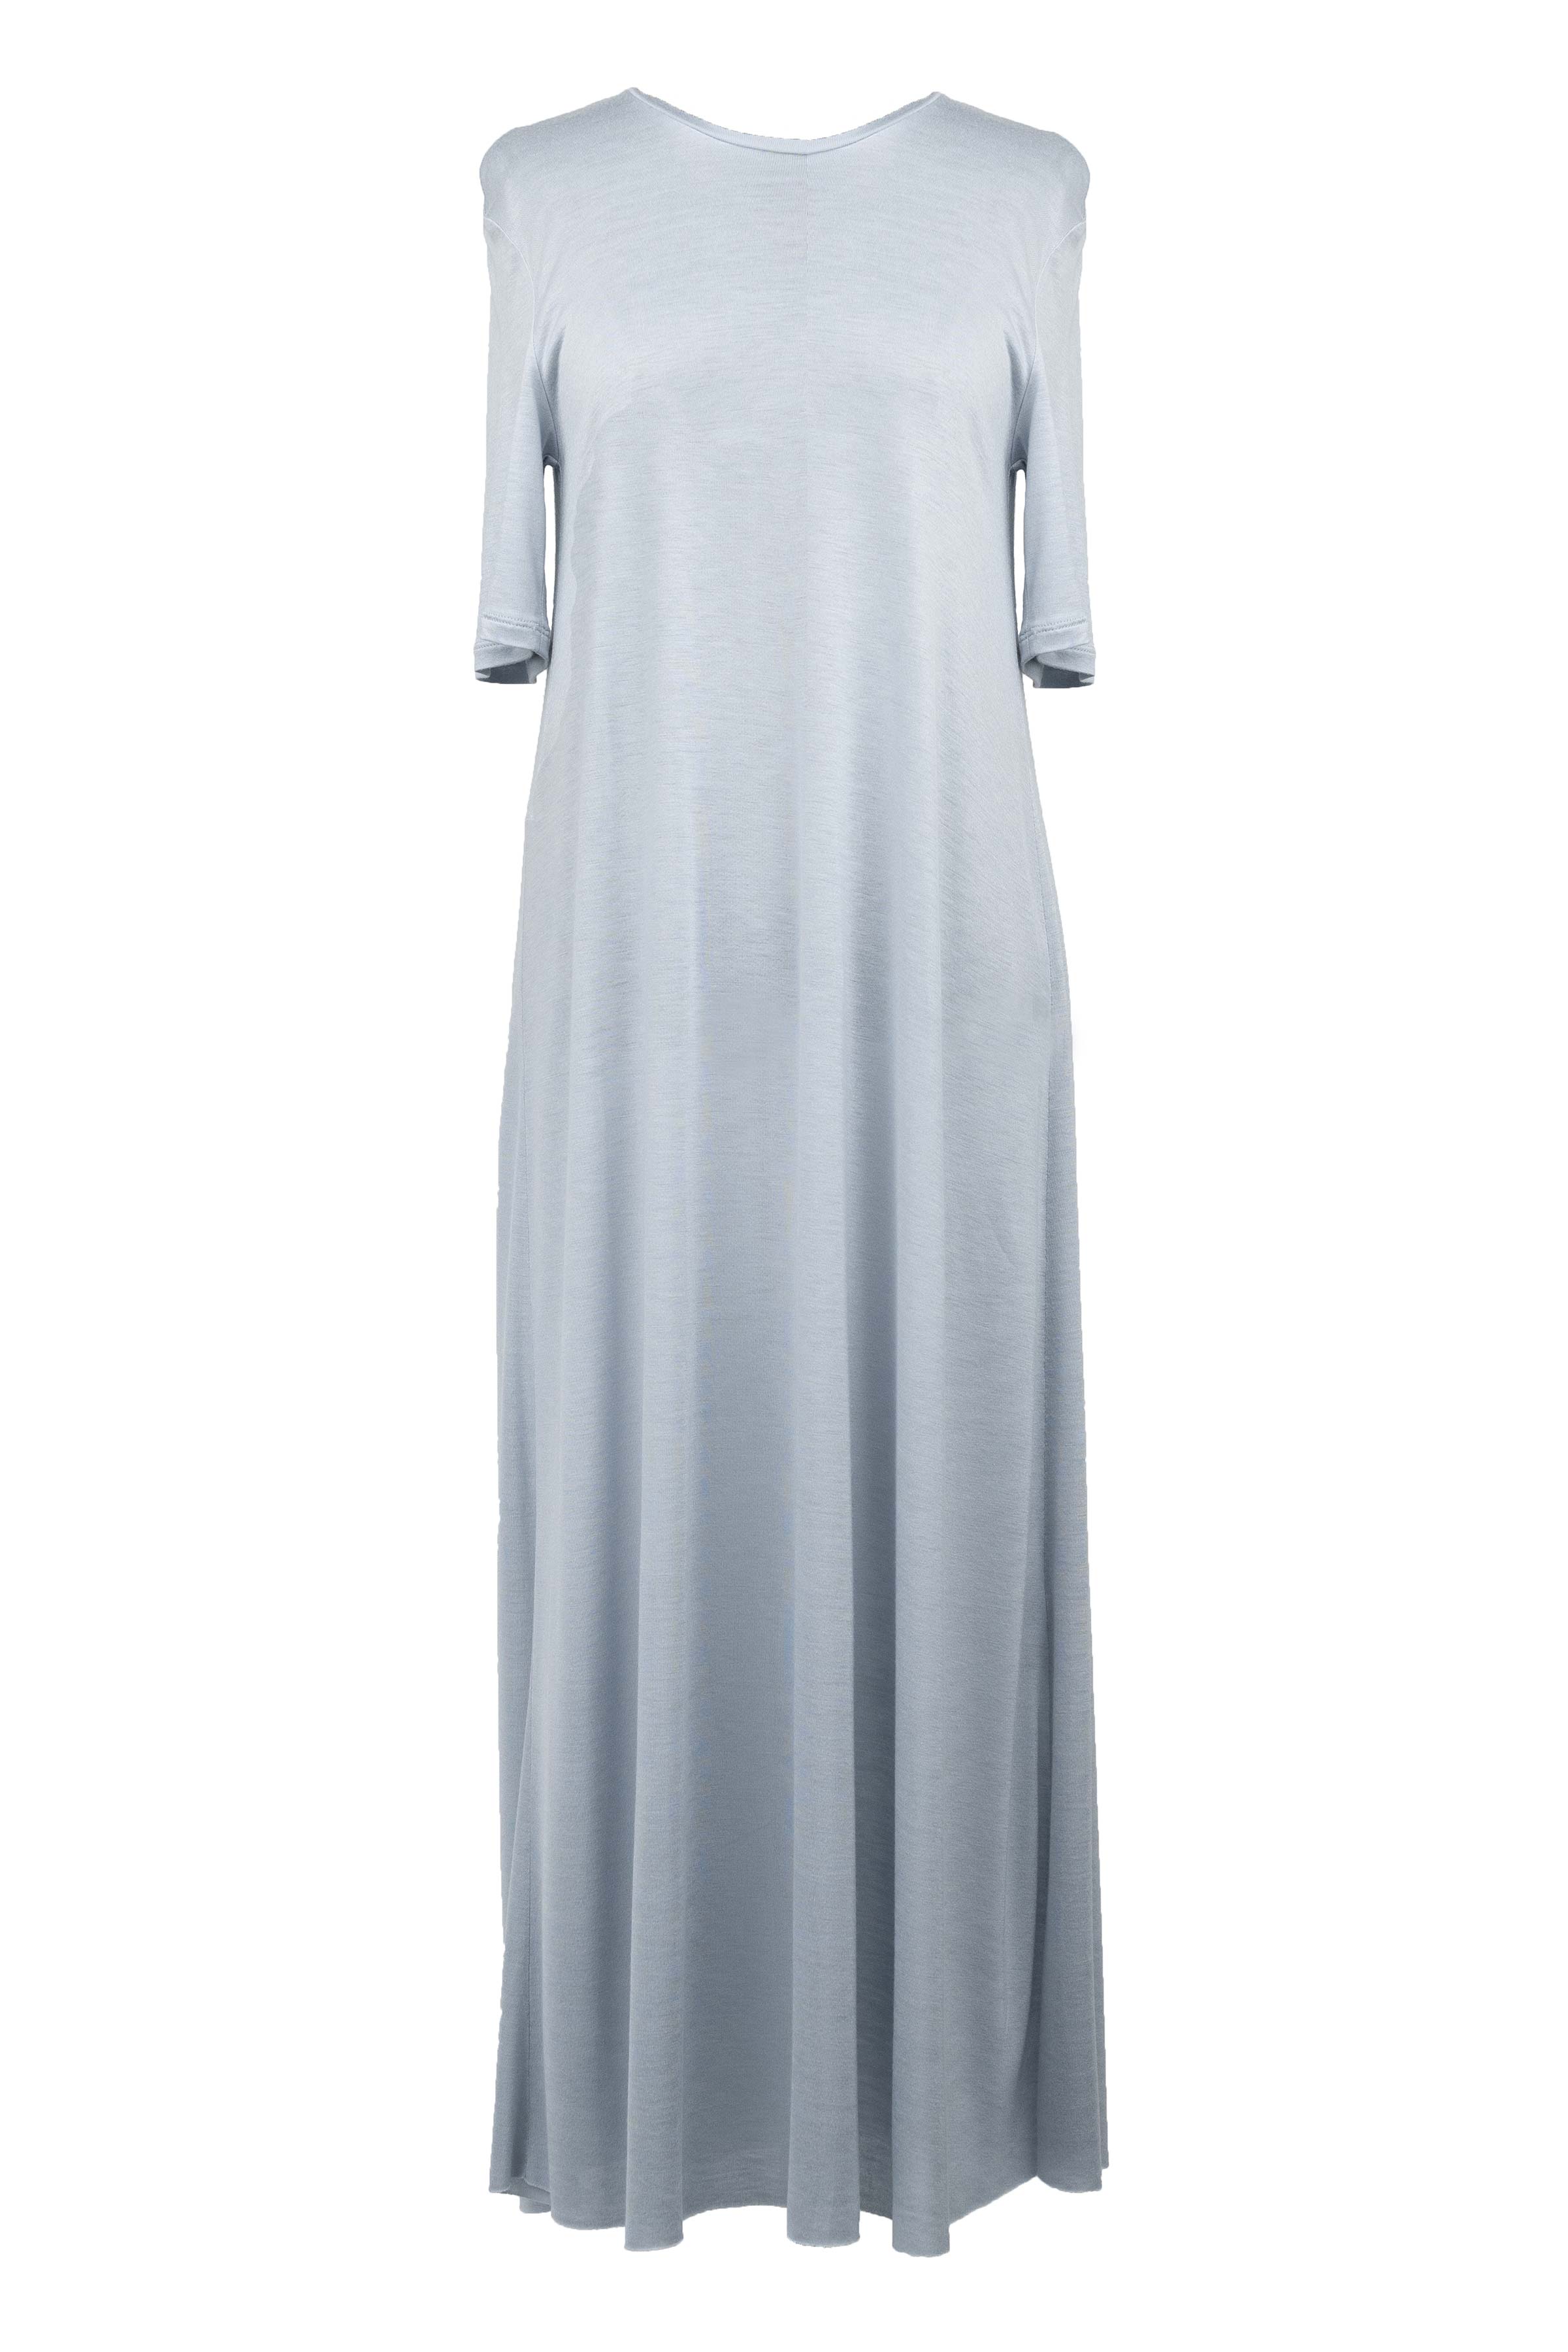 Платье база широкое короткое, короткий рукав 39 Светло- джинсовый (denim bleu clair)  от Lesel (Лесель)! Заказывайте по ✆ 8 (800) 777 02 37